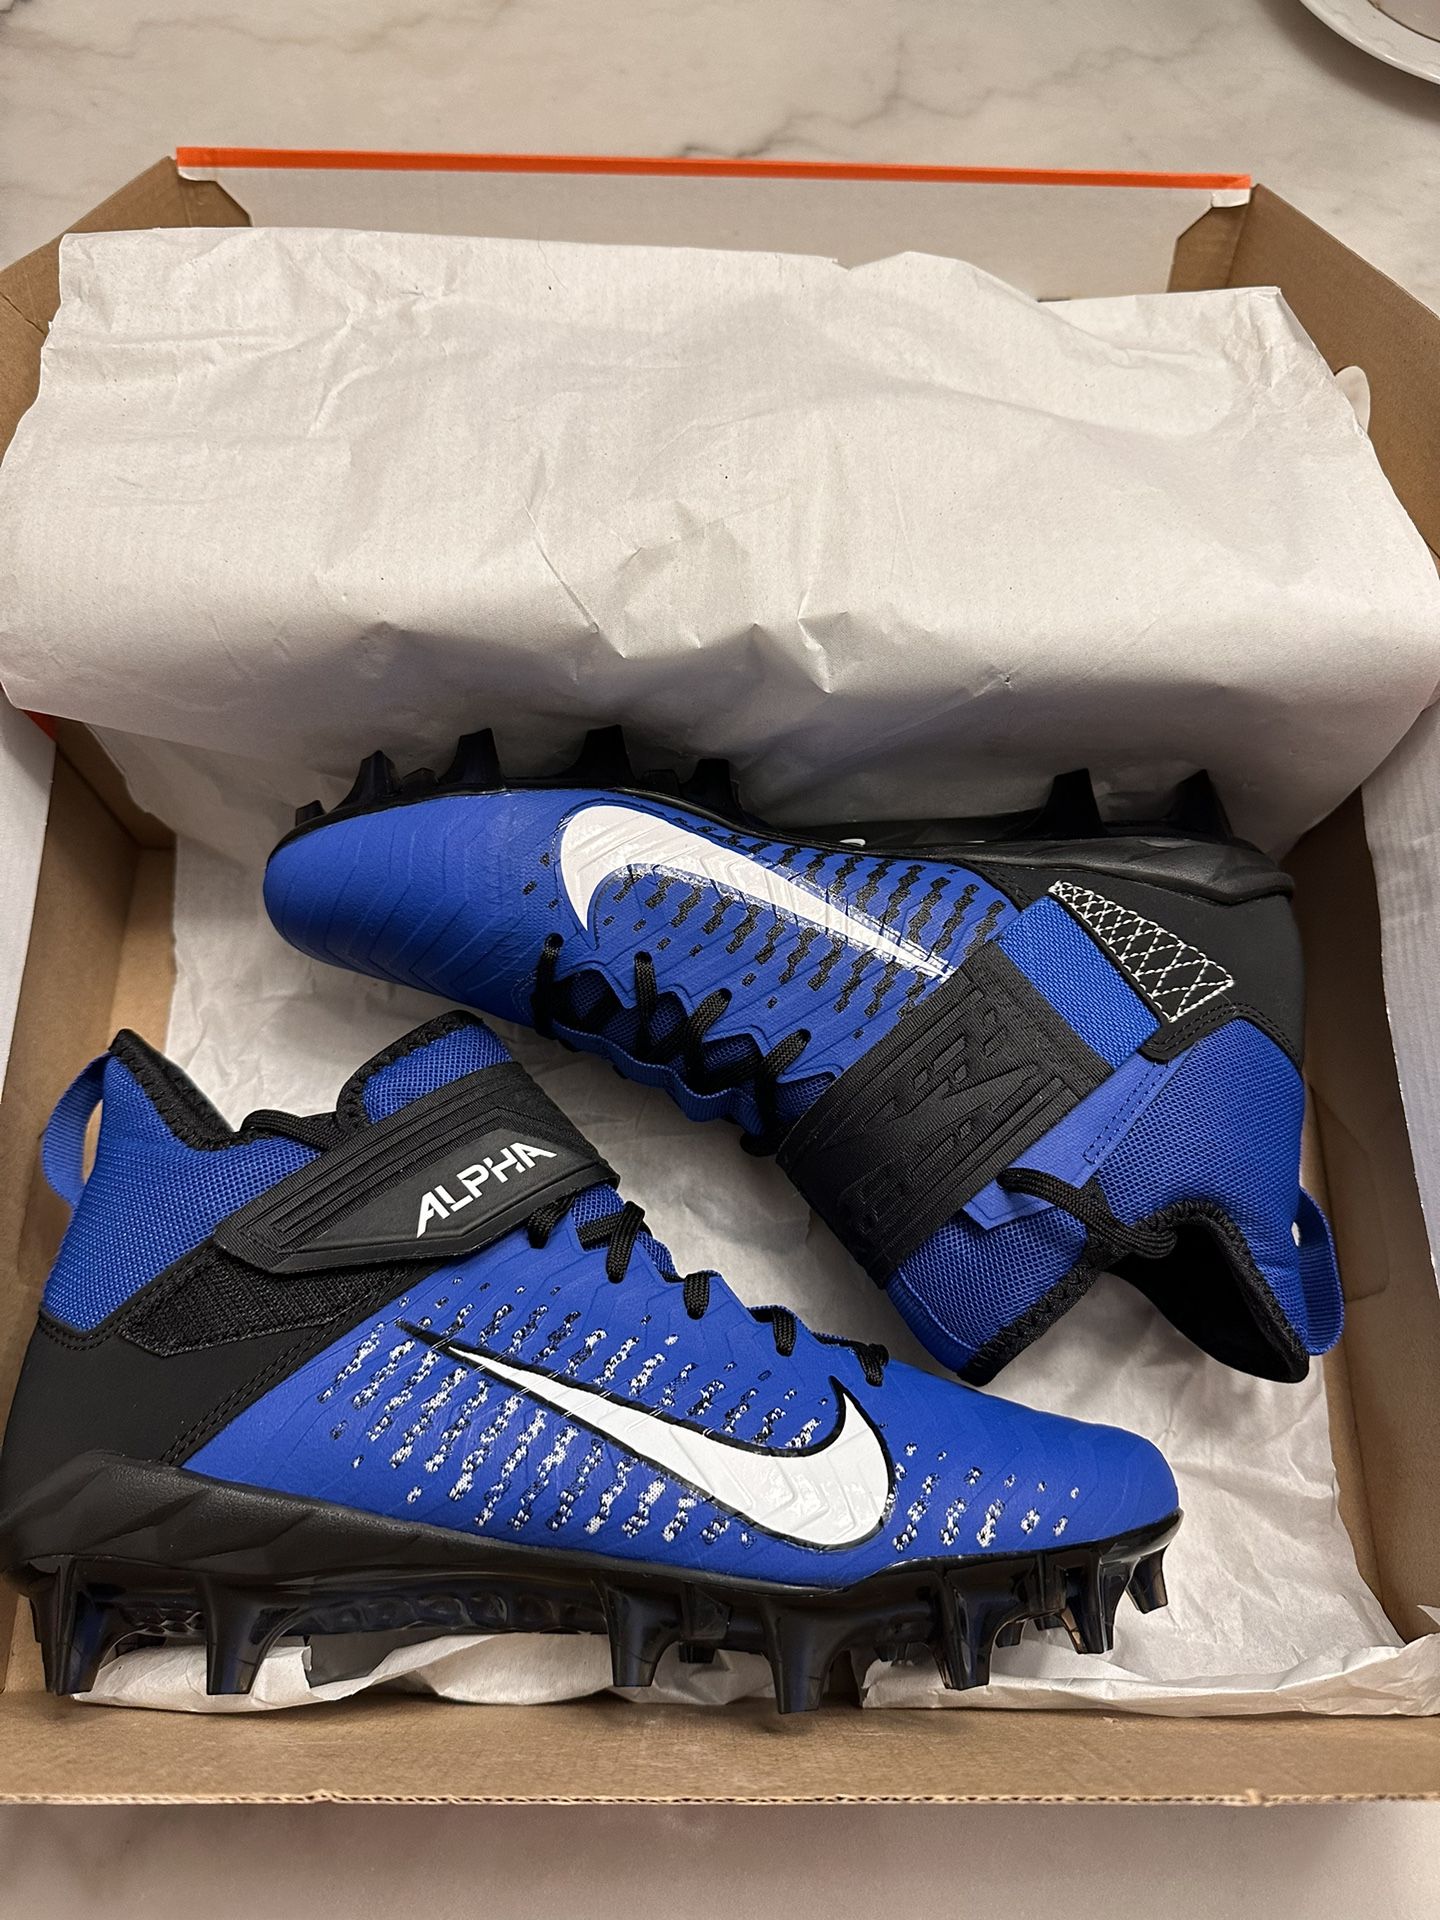 Nike Alpha Menace Pro 2 Mid Football Blue Black Men's Size 7.5